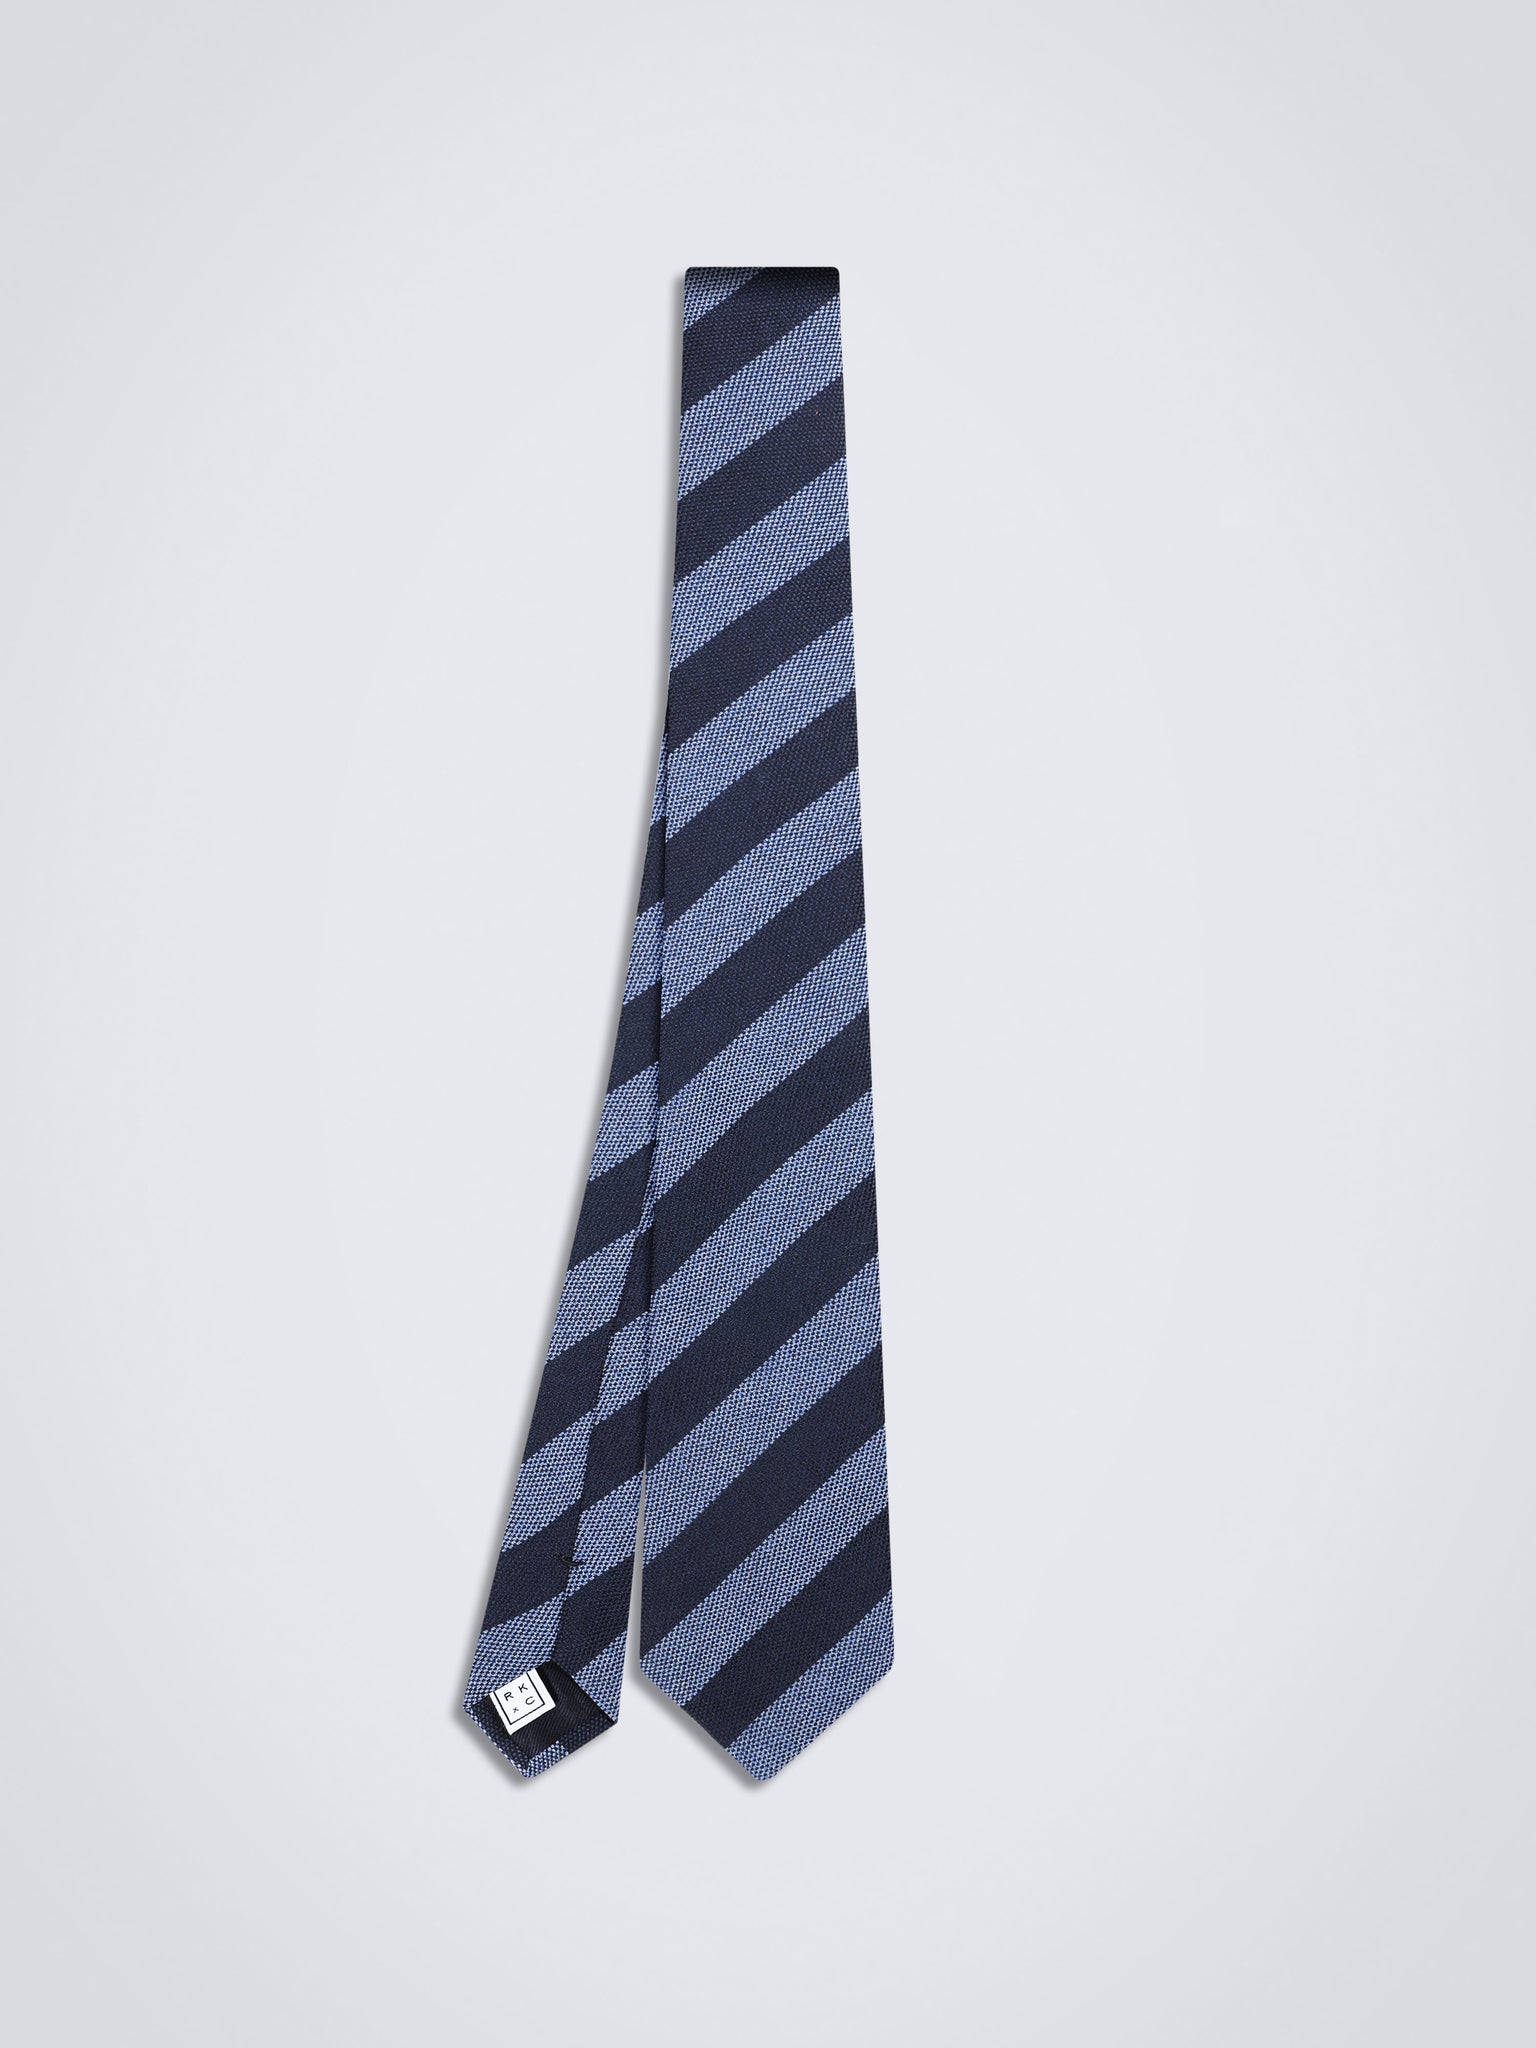 Stripes (Navy & Blue) - Necktie